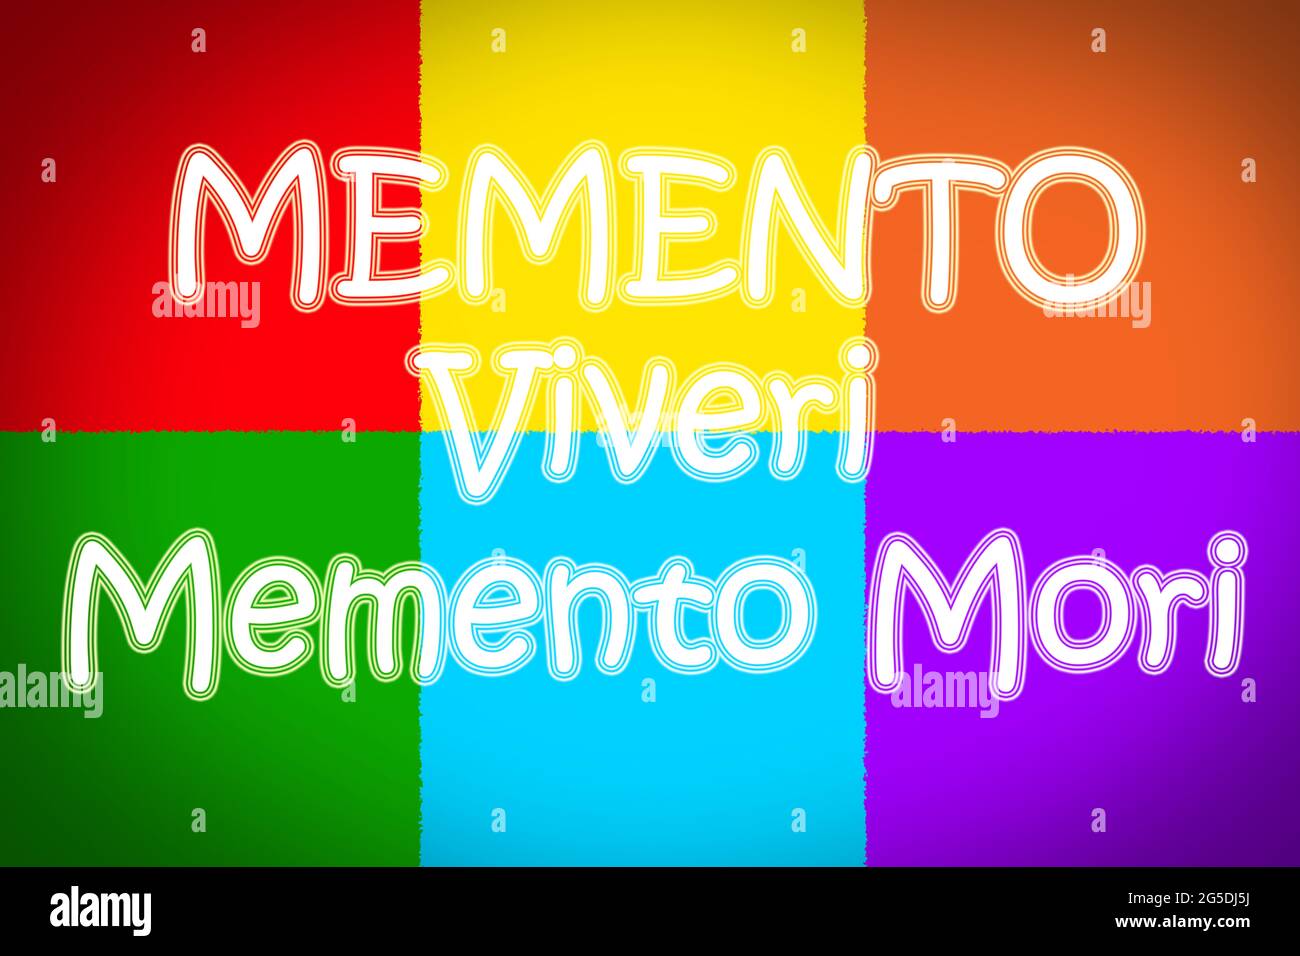 Memento Viveri Memento Mori Concept text on background Stock Photo